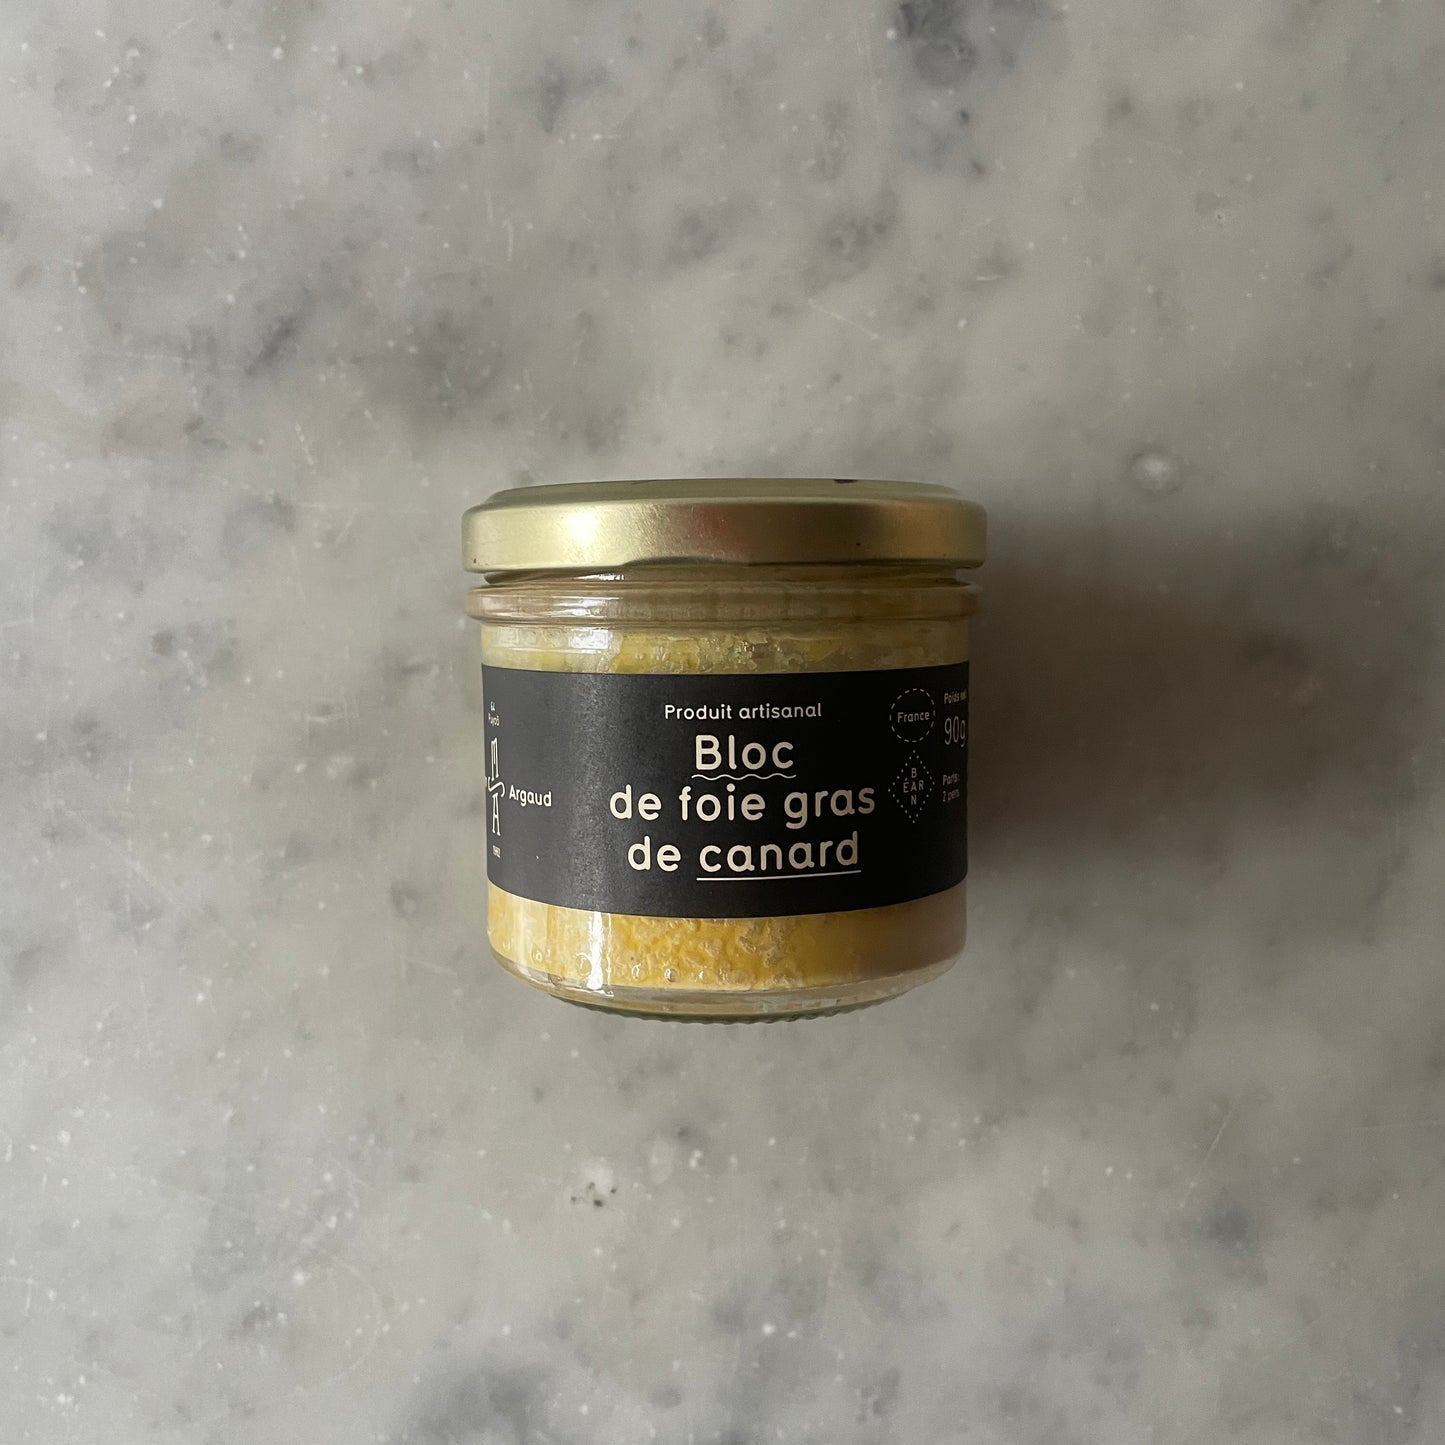 Maison argaud bloc de foie gras canard 90